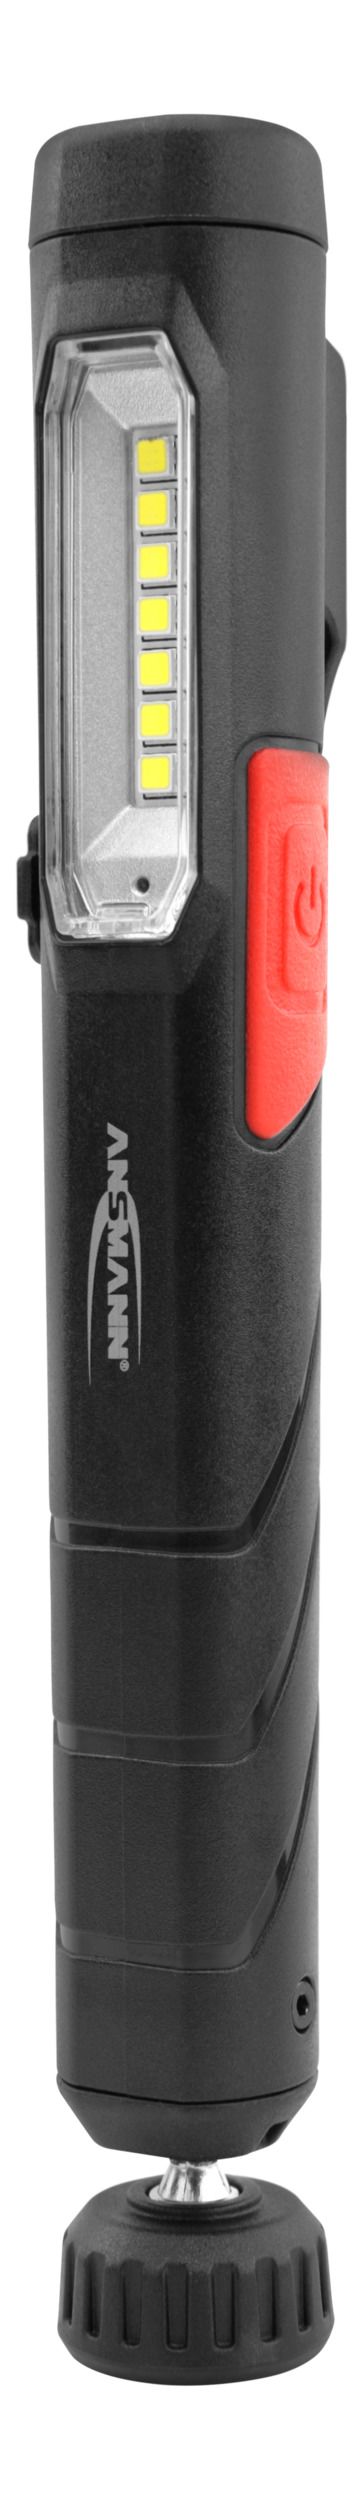 Ansmann PL210R LED Pen Torch - Rechargeable 210 lm